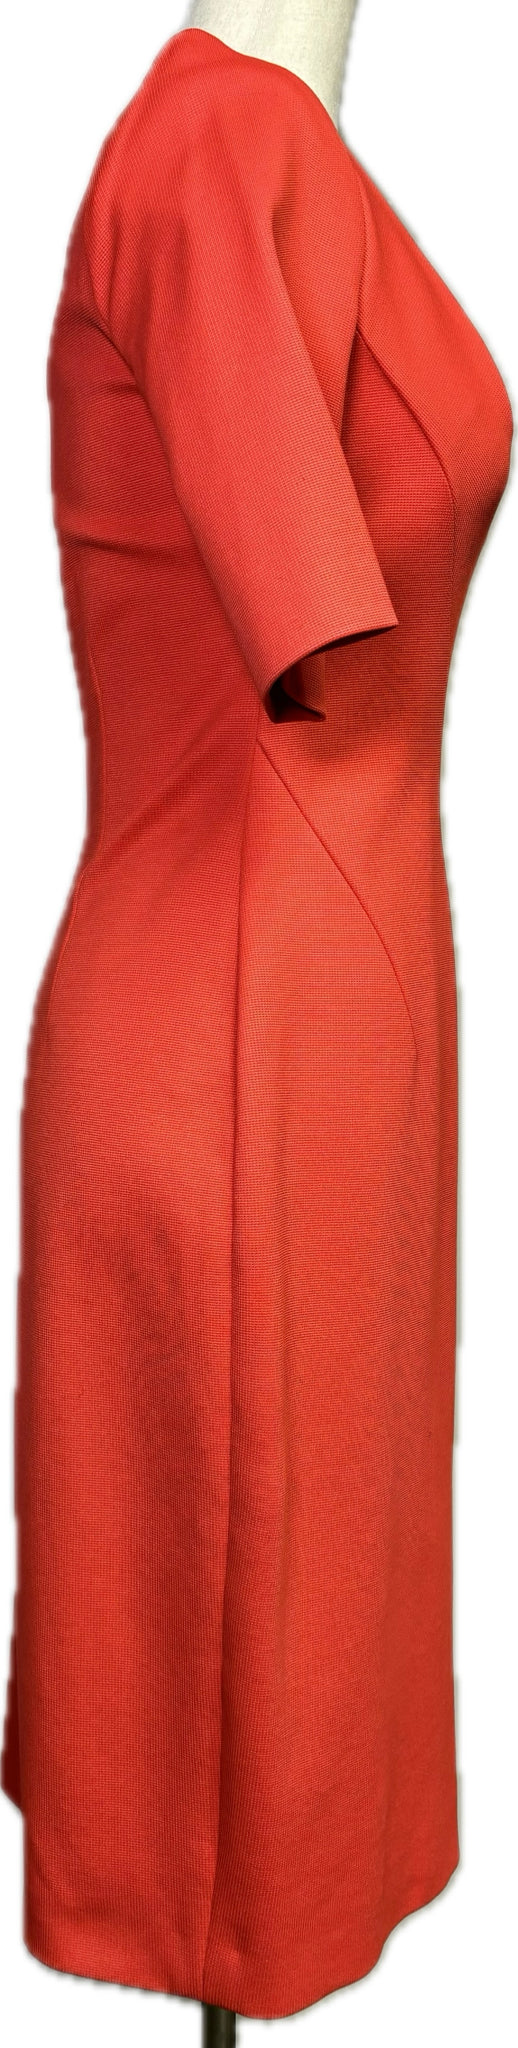 L.K. Bennett Red Dress